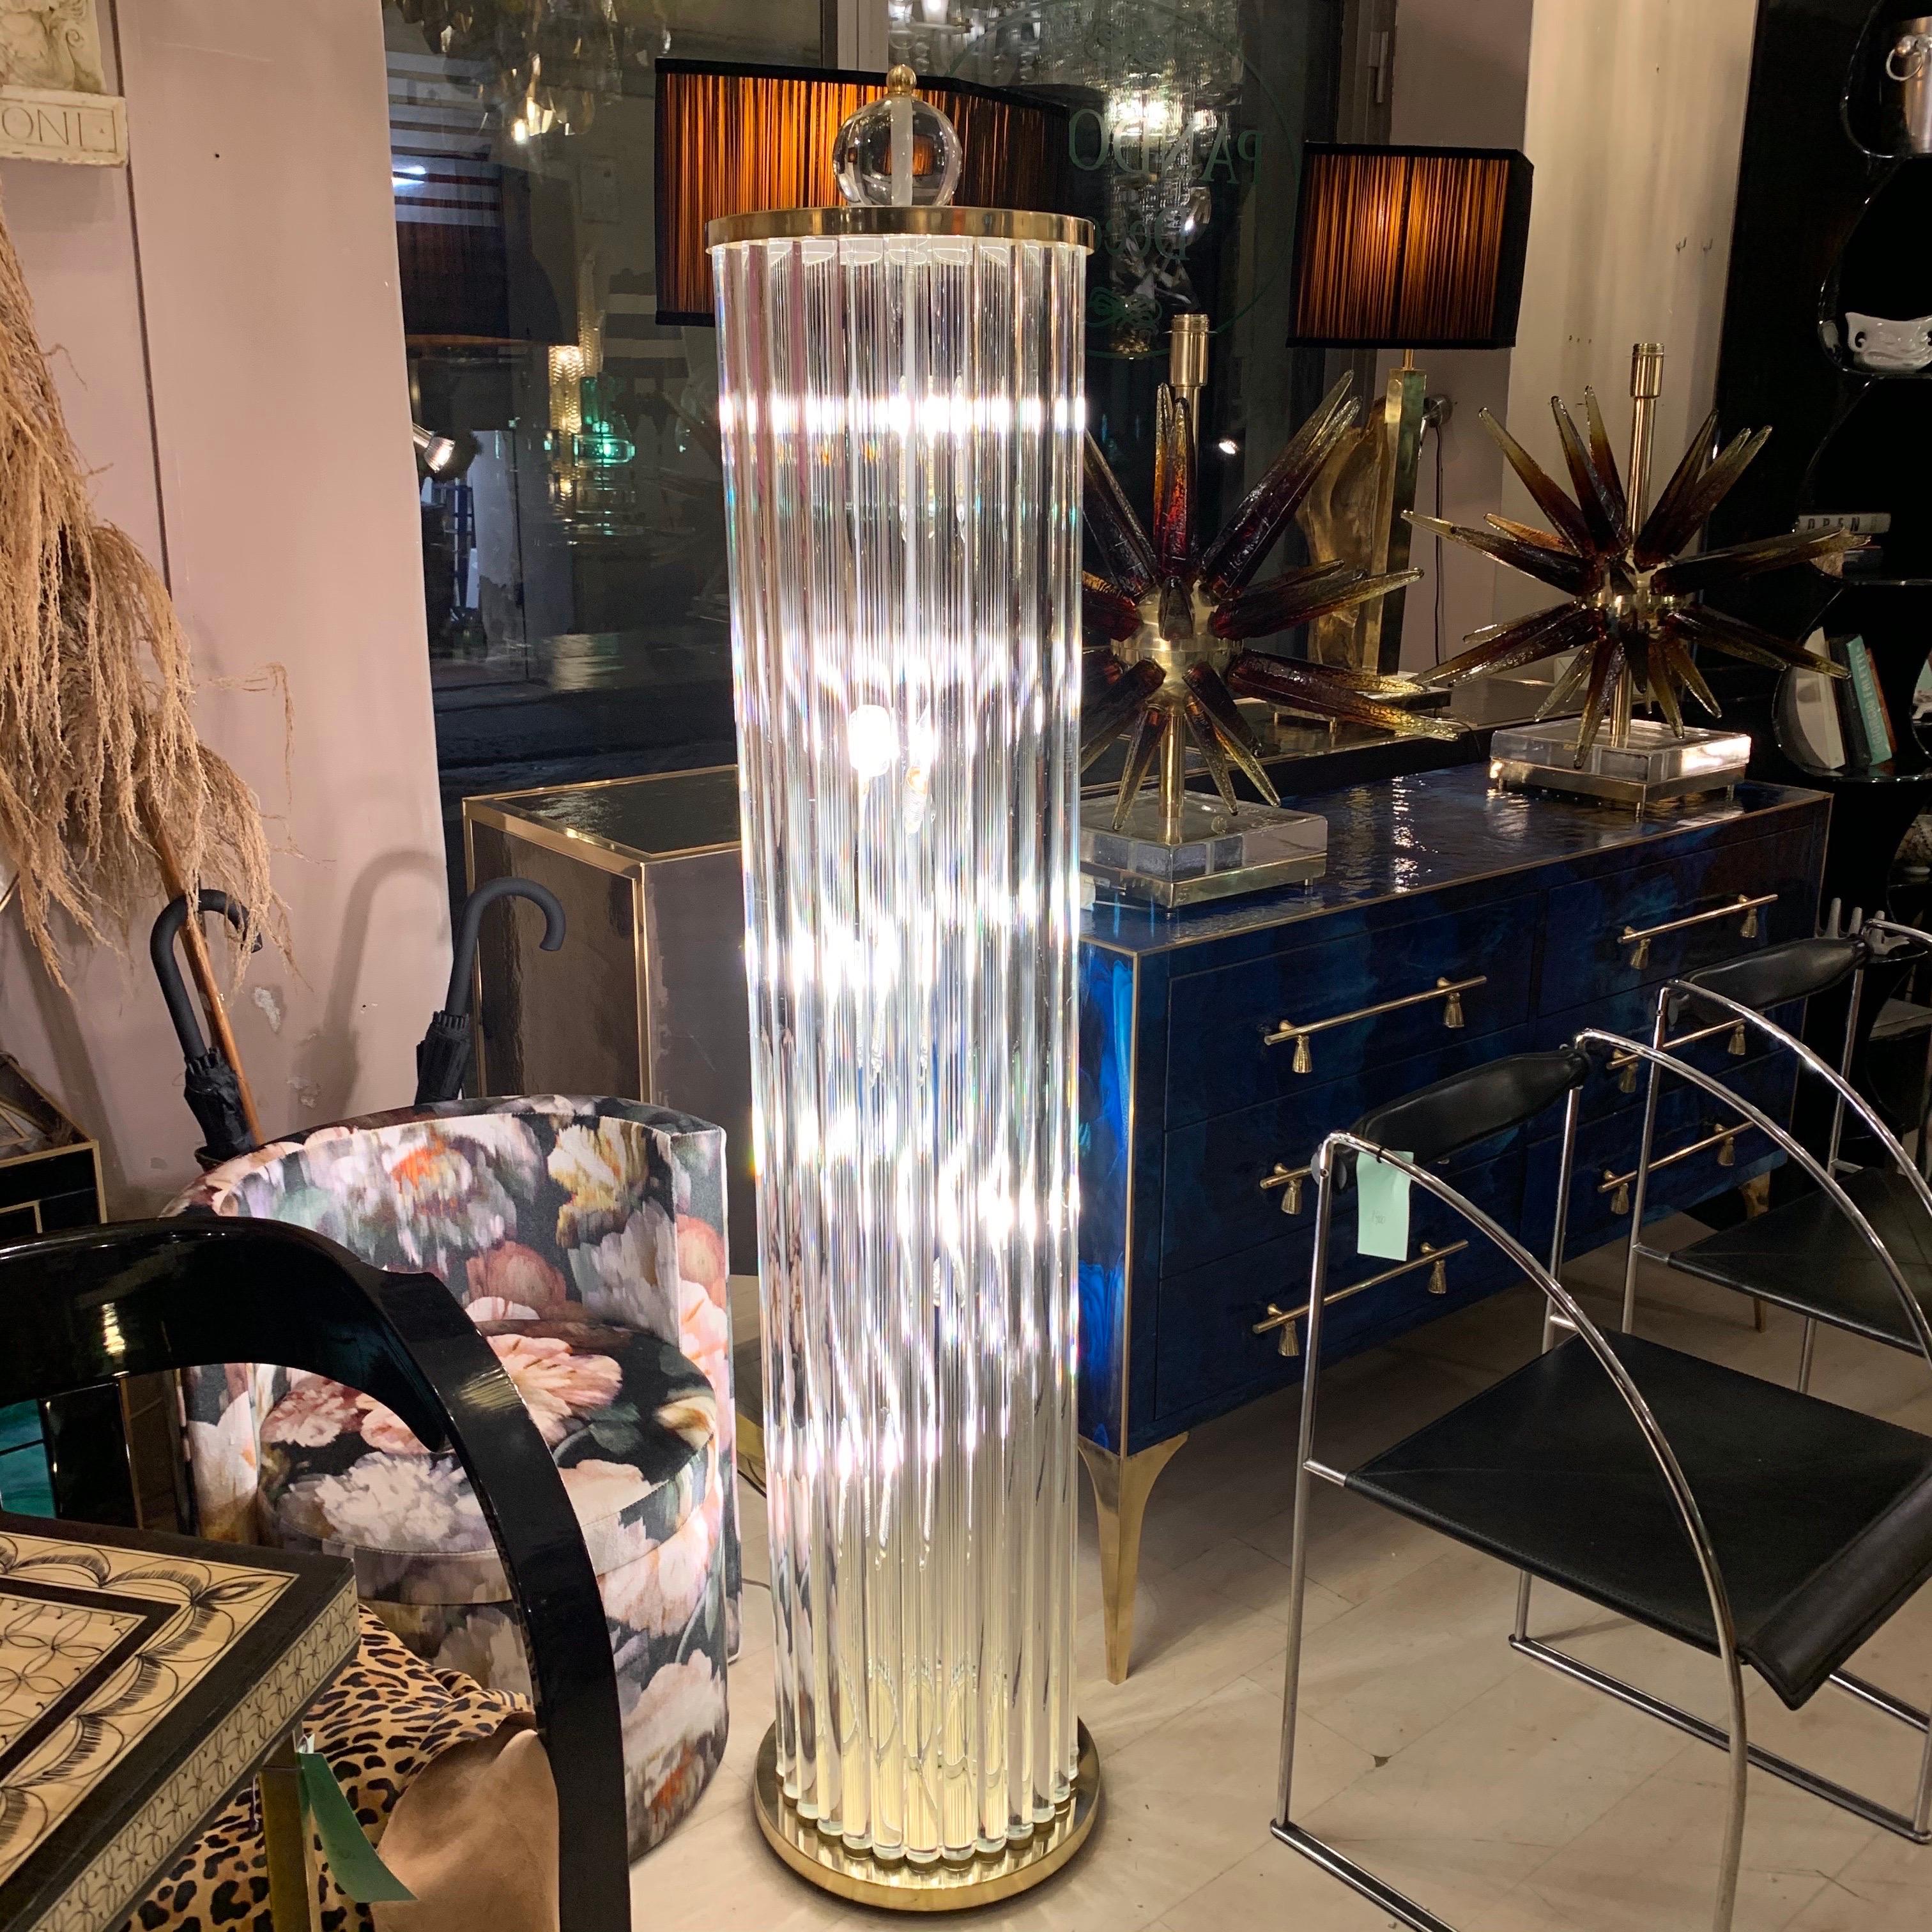 Lampadaire Murano avec tiges en verre clair, base et sommet en laiton. Le lampadaire est une sculpture en verre transparent en forme de colonne, sur le dessus se trouve une sphère en verre transparent de Murano. Lampes à cinq ampoules.
Peut être